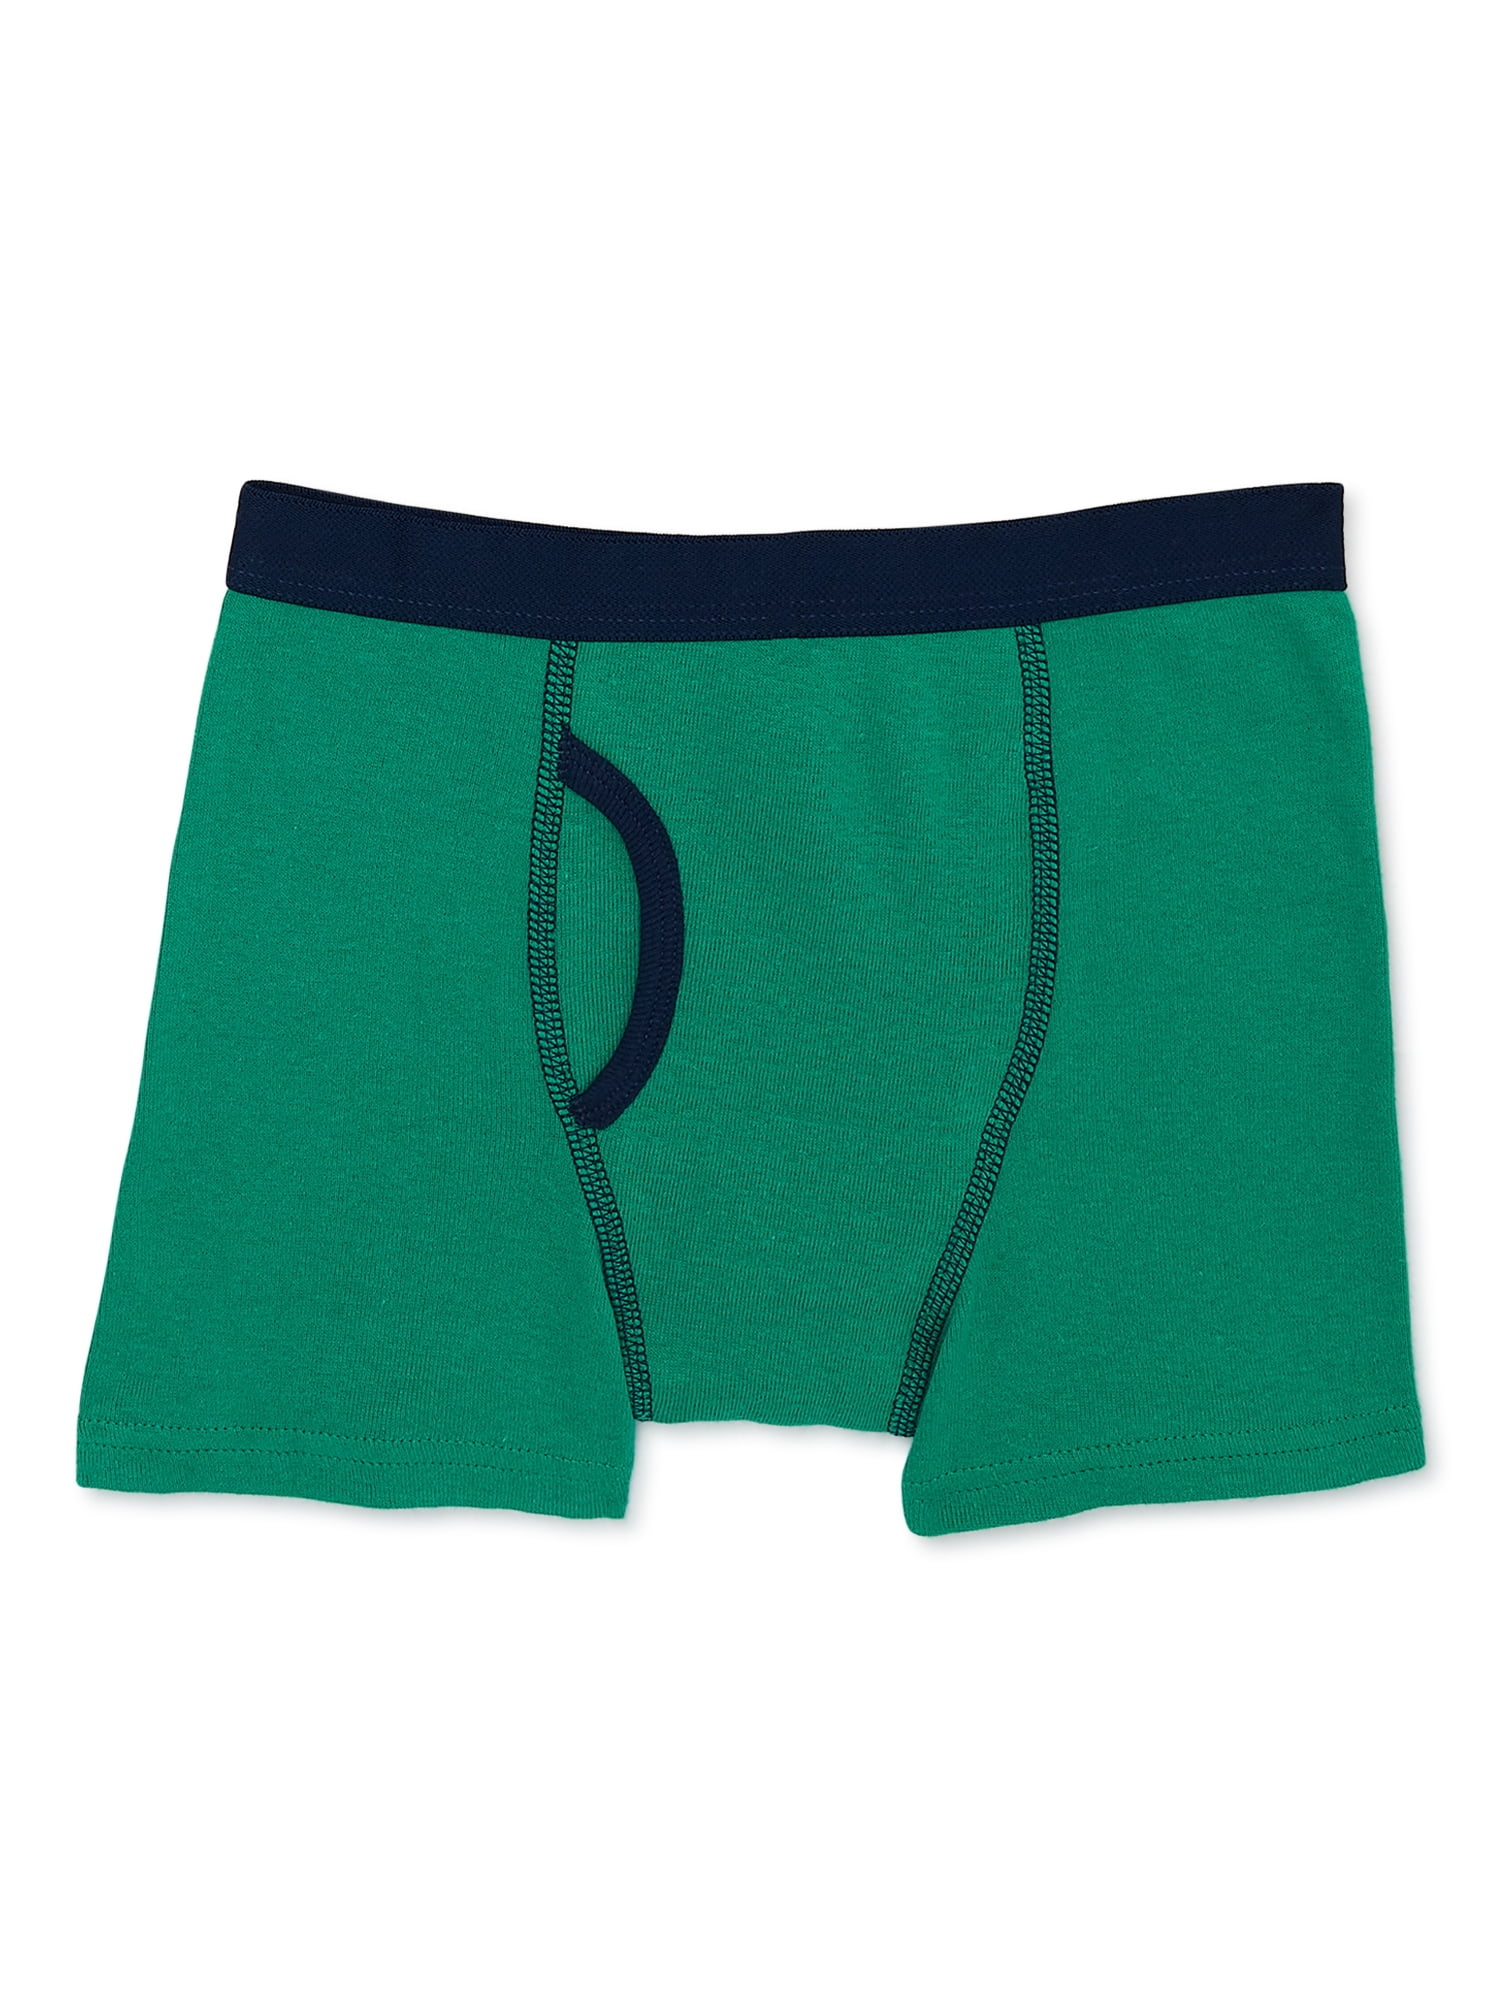 Wonder Nation Boys Cotton Boxer Brief Underwear, 5-Pack, Sizes S-XL